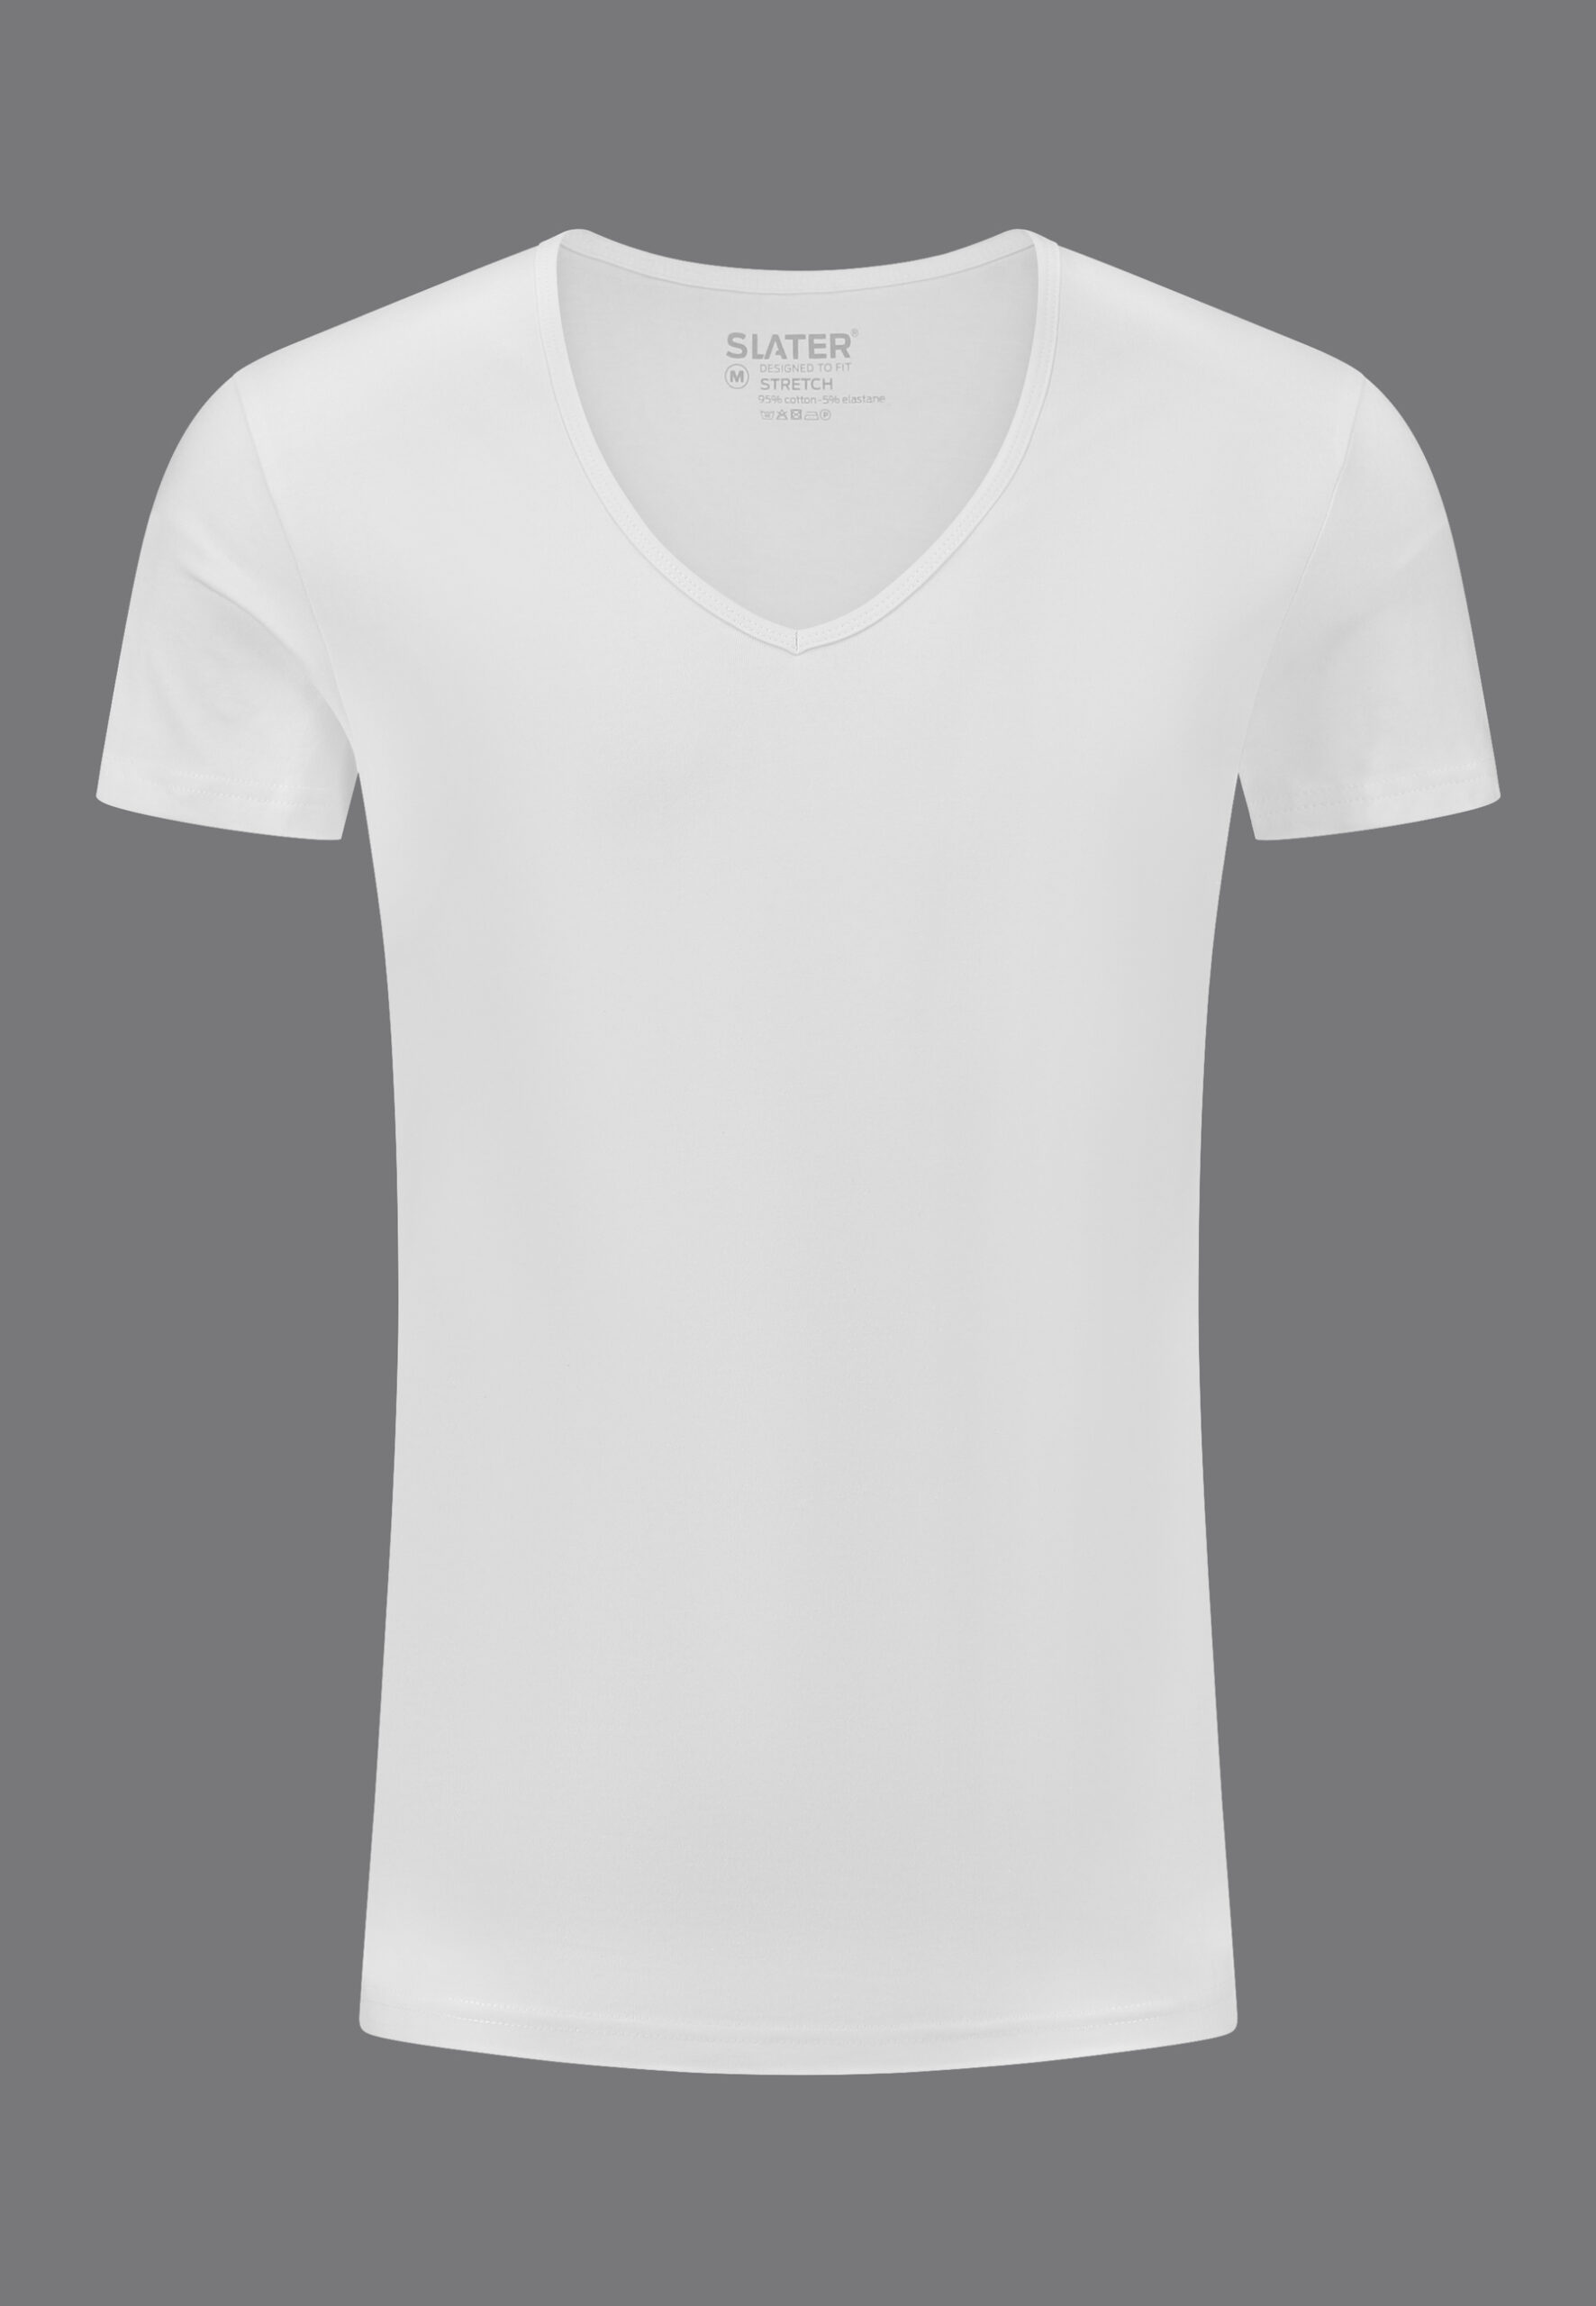 Afbreken moeder Petulance Stretch t shirts - Designed by Slater